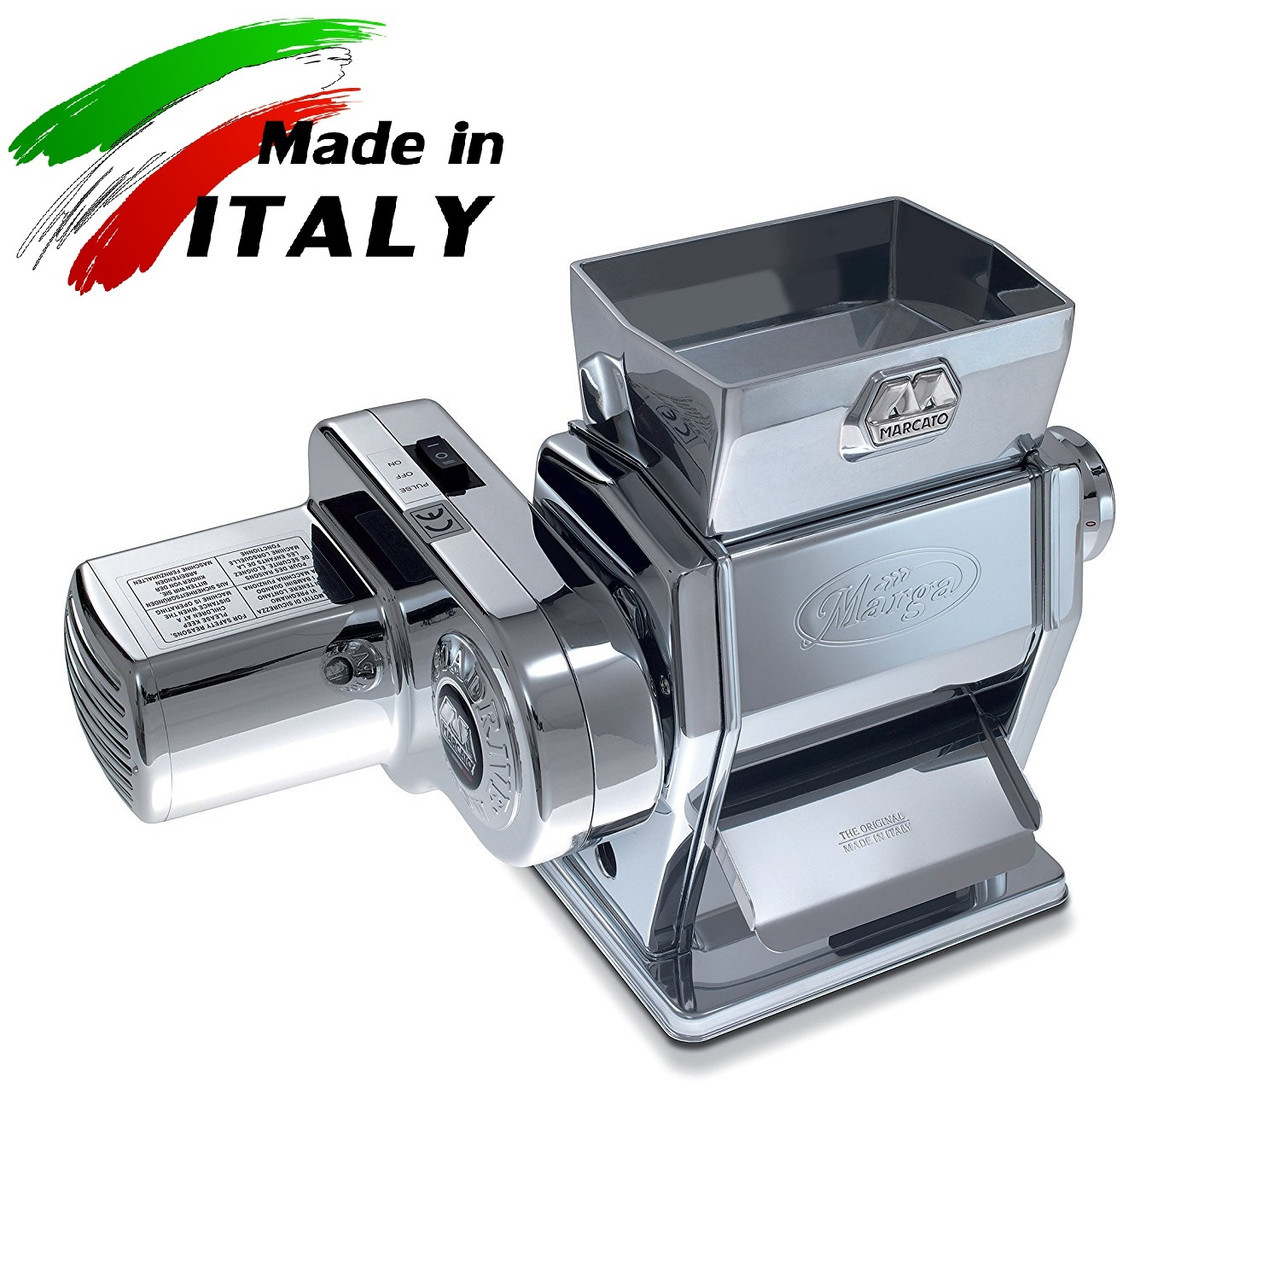 Marcato Marga Mulino Pasta Drive домашняя электромеханическая мельница для муки и хлопьев из зерна